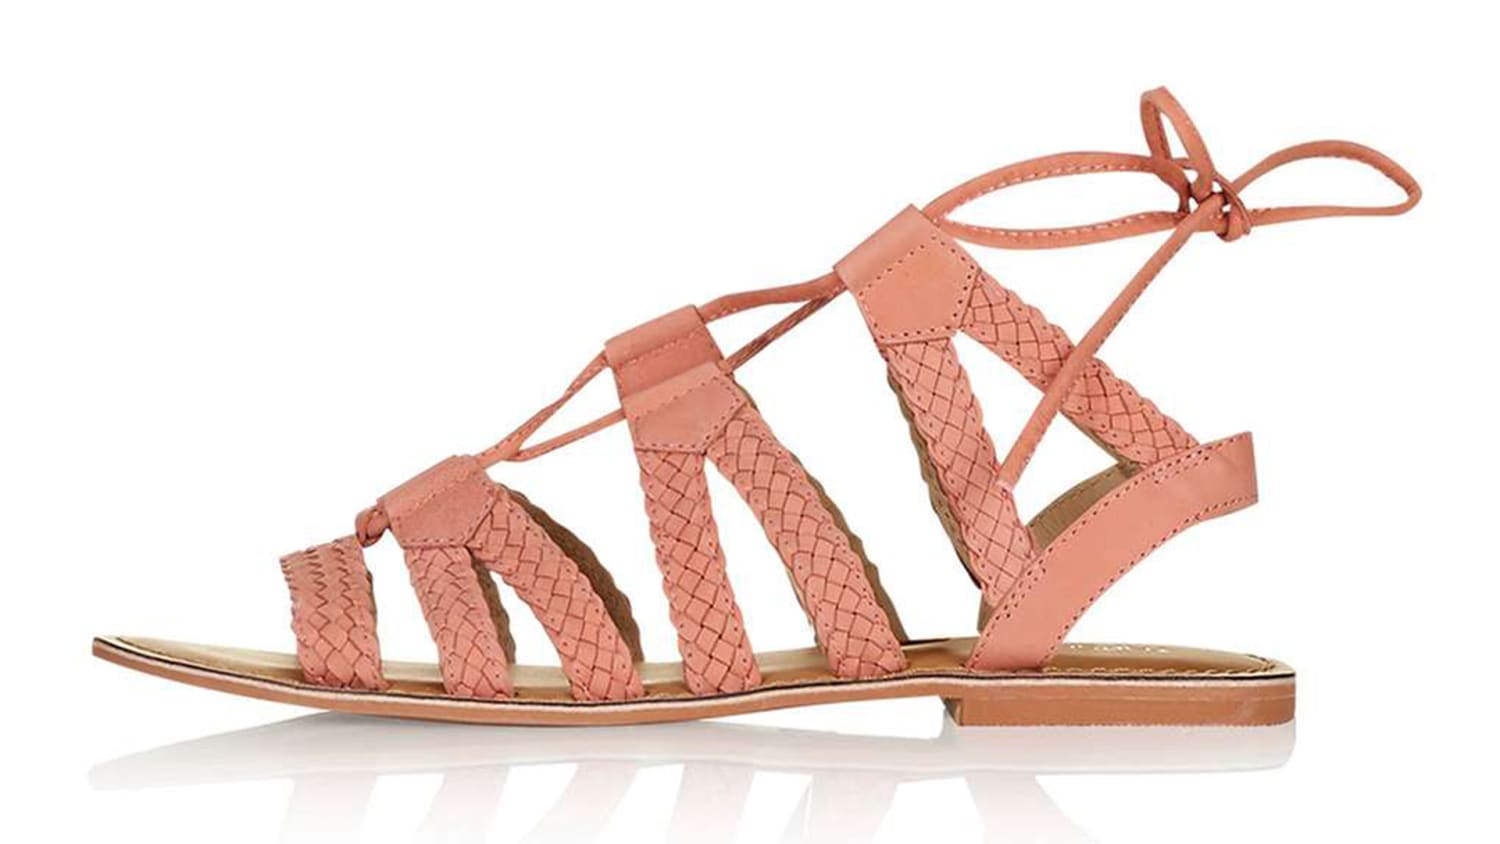 Naar boven Klimatologische bergen Interpreteren Summer sandals 2016: The best styles to buy now